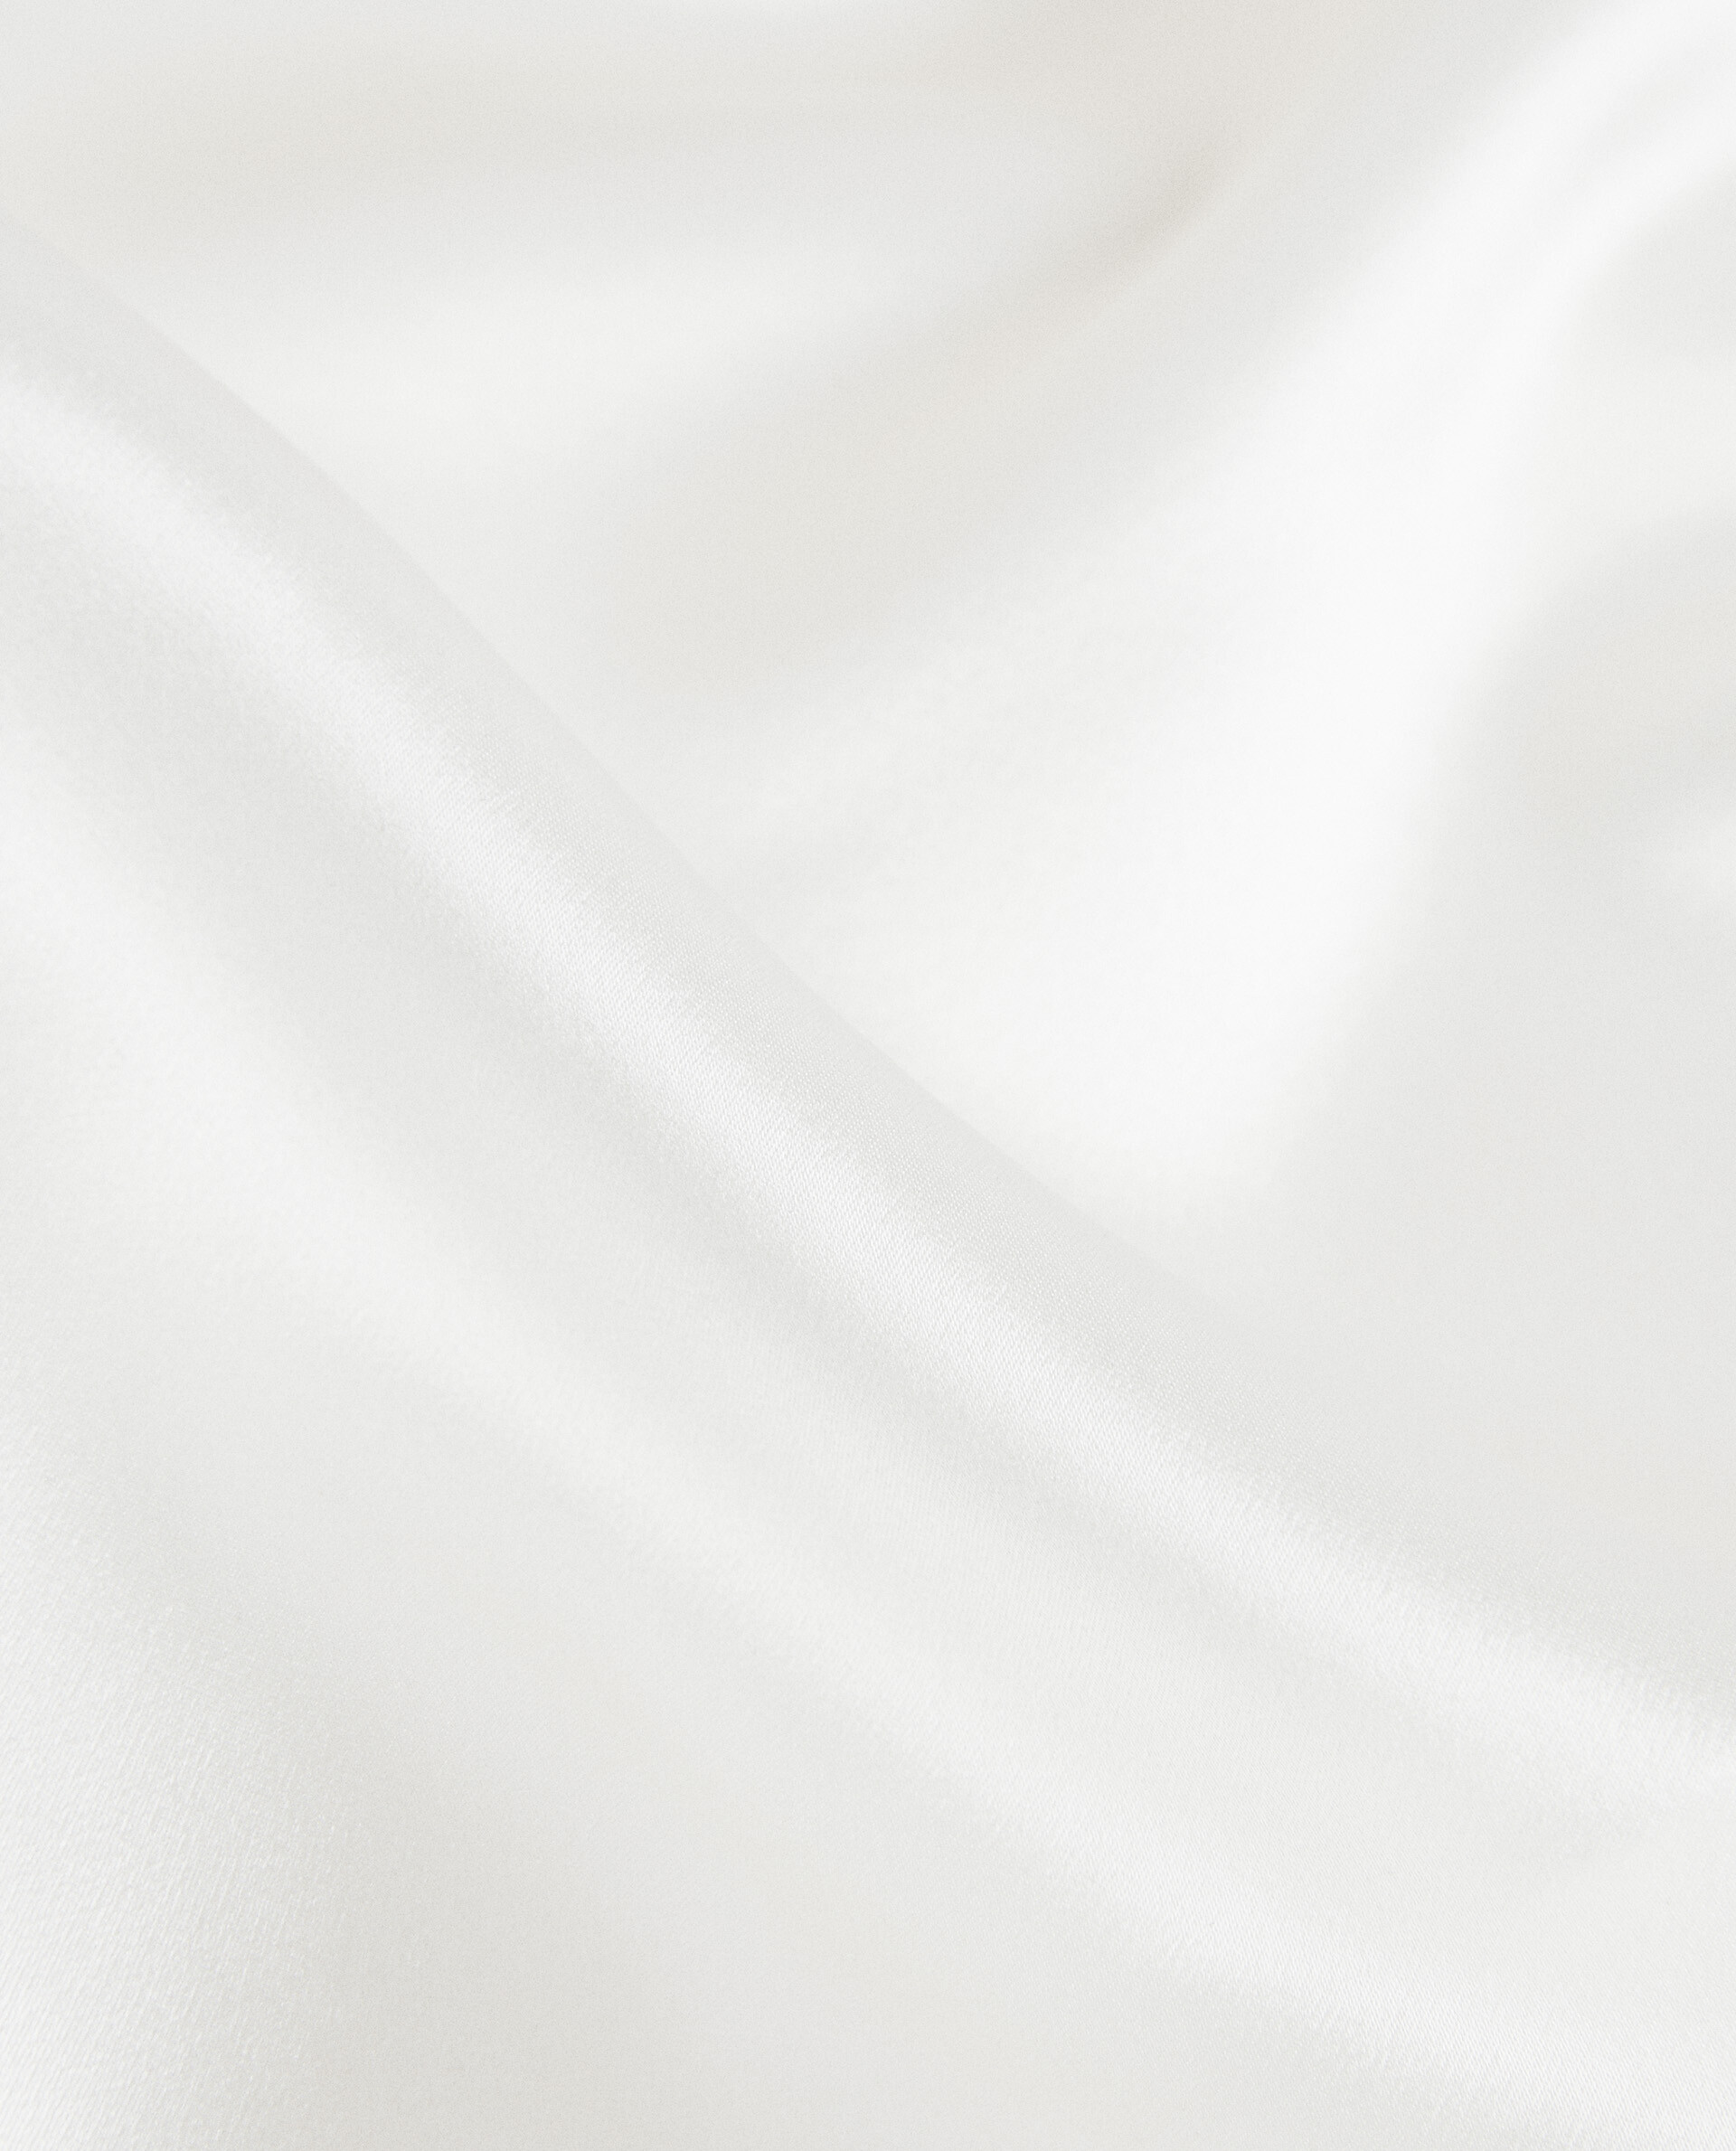 JIANINGHOME Family Bedding 120x200, lenzuola di seta, seta ghiacciata, seta  lavata, raso, seta stampata in seta, lenzuolo singolo estivo, copriletto